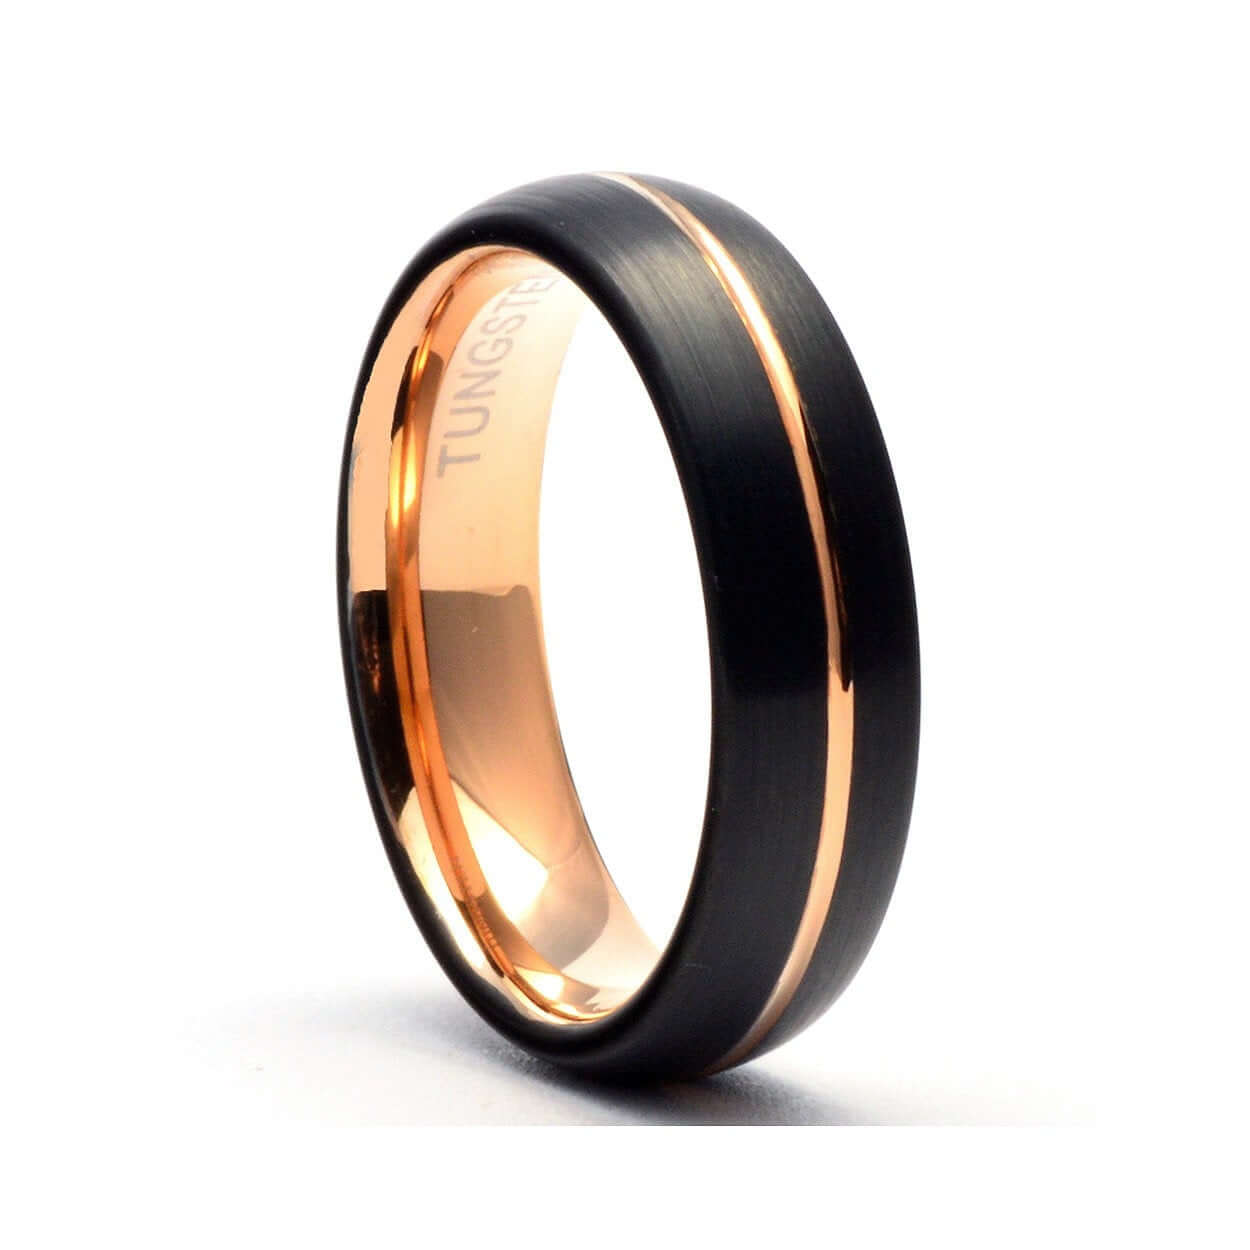 Tungsten Ring, Men's Tungsten Wedding Band, Men's Black Wedding Band, Black Tungsten Ring, Rose Gold Tungsten Ring, Rose Gold Band, Black